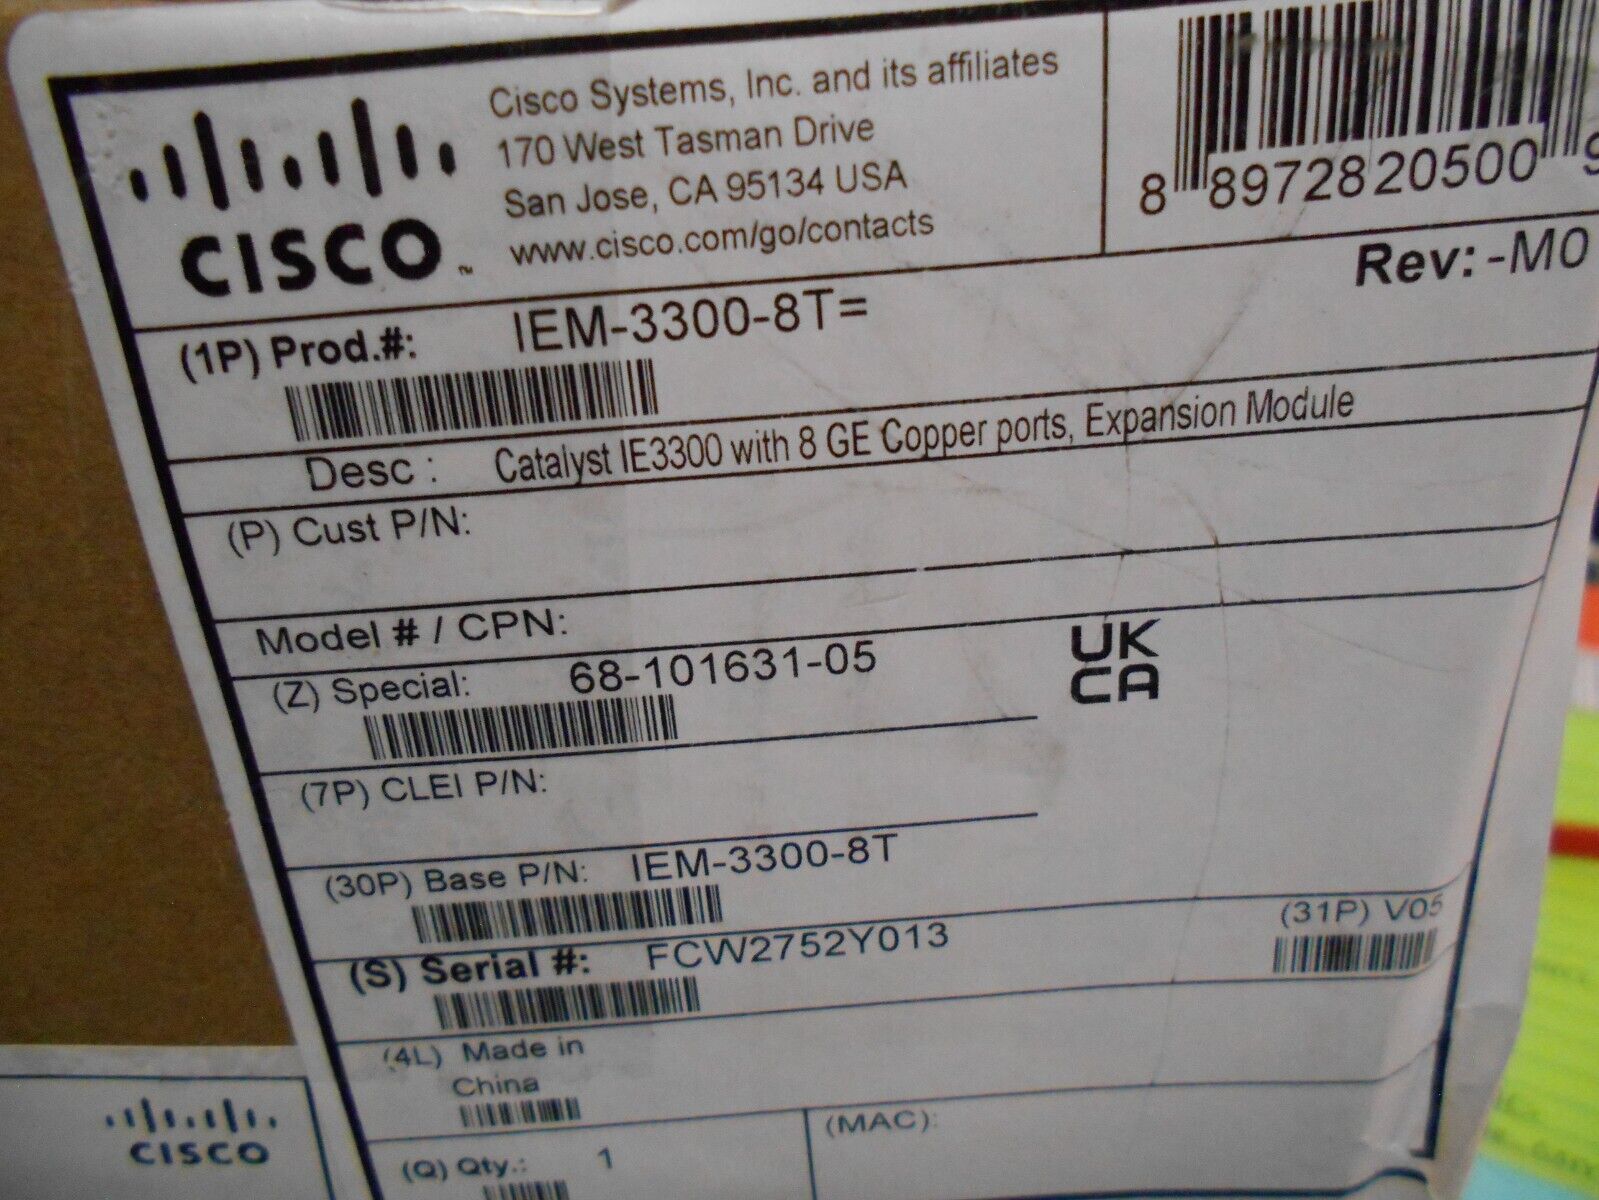 Cisco, IEM-3300-8P, Ethernet Switch Expansion